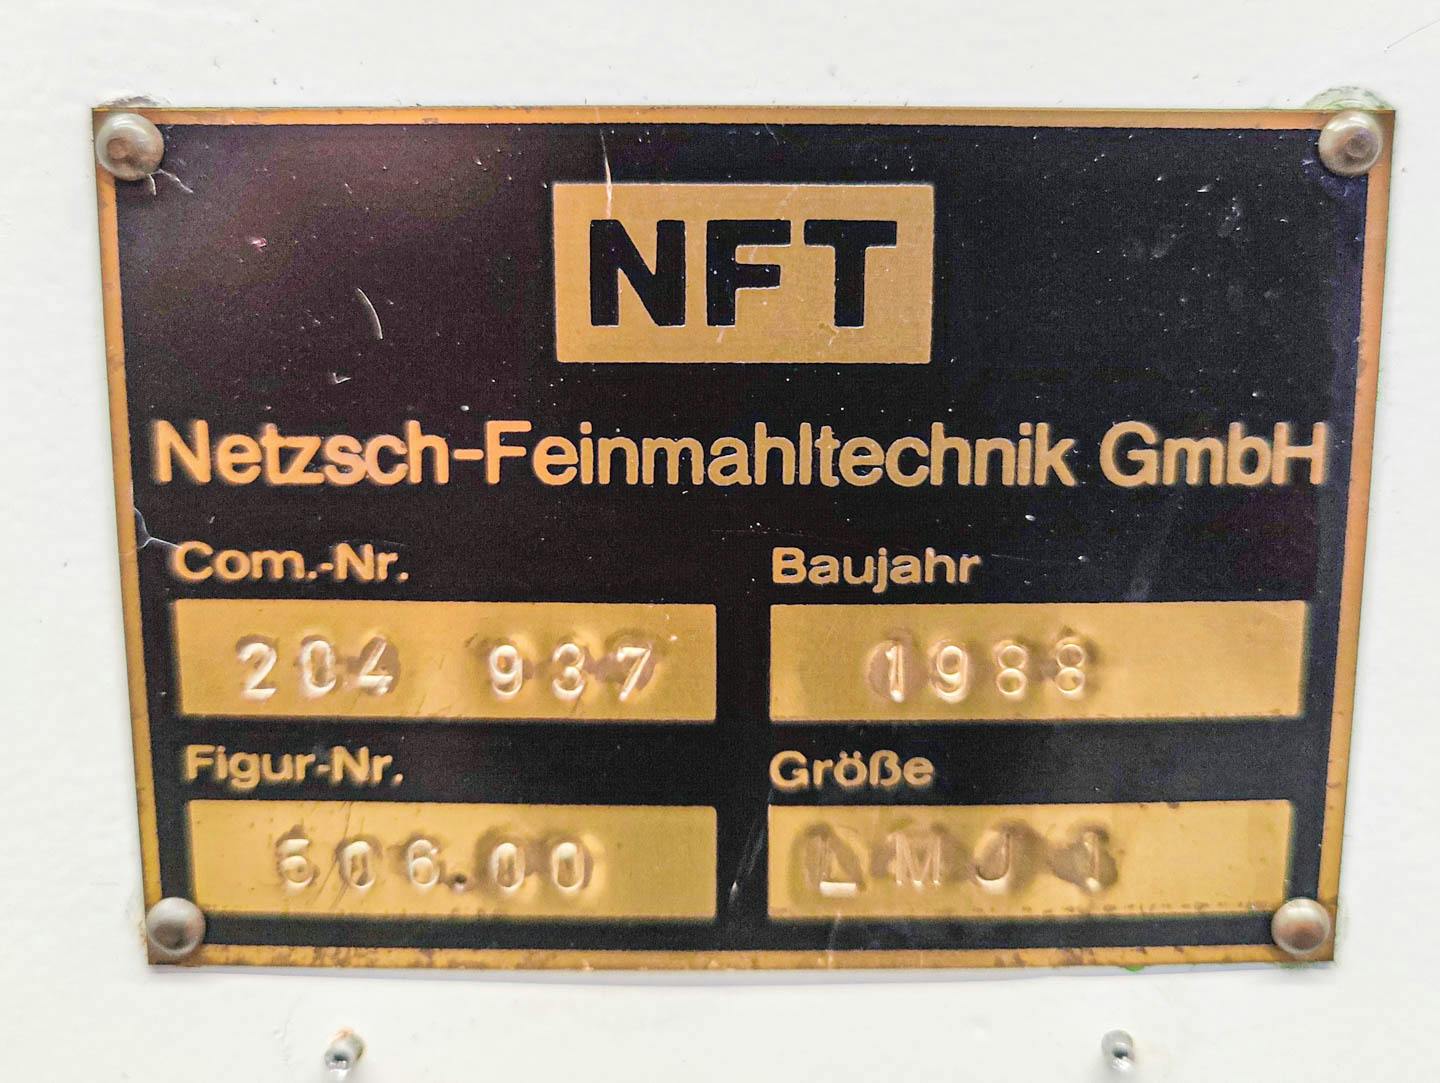 Netzsch LMJ-01 - Pískový mlýnek - image 6